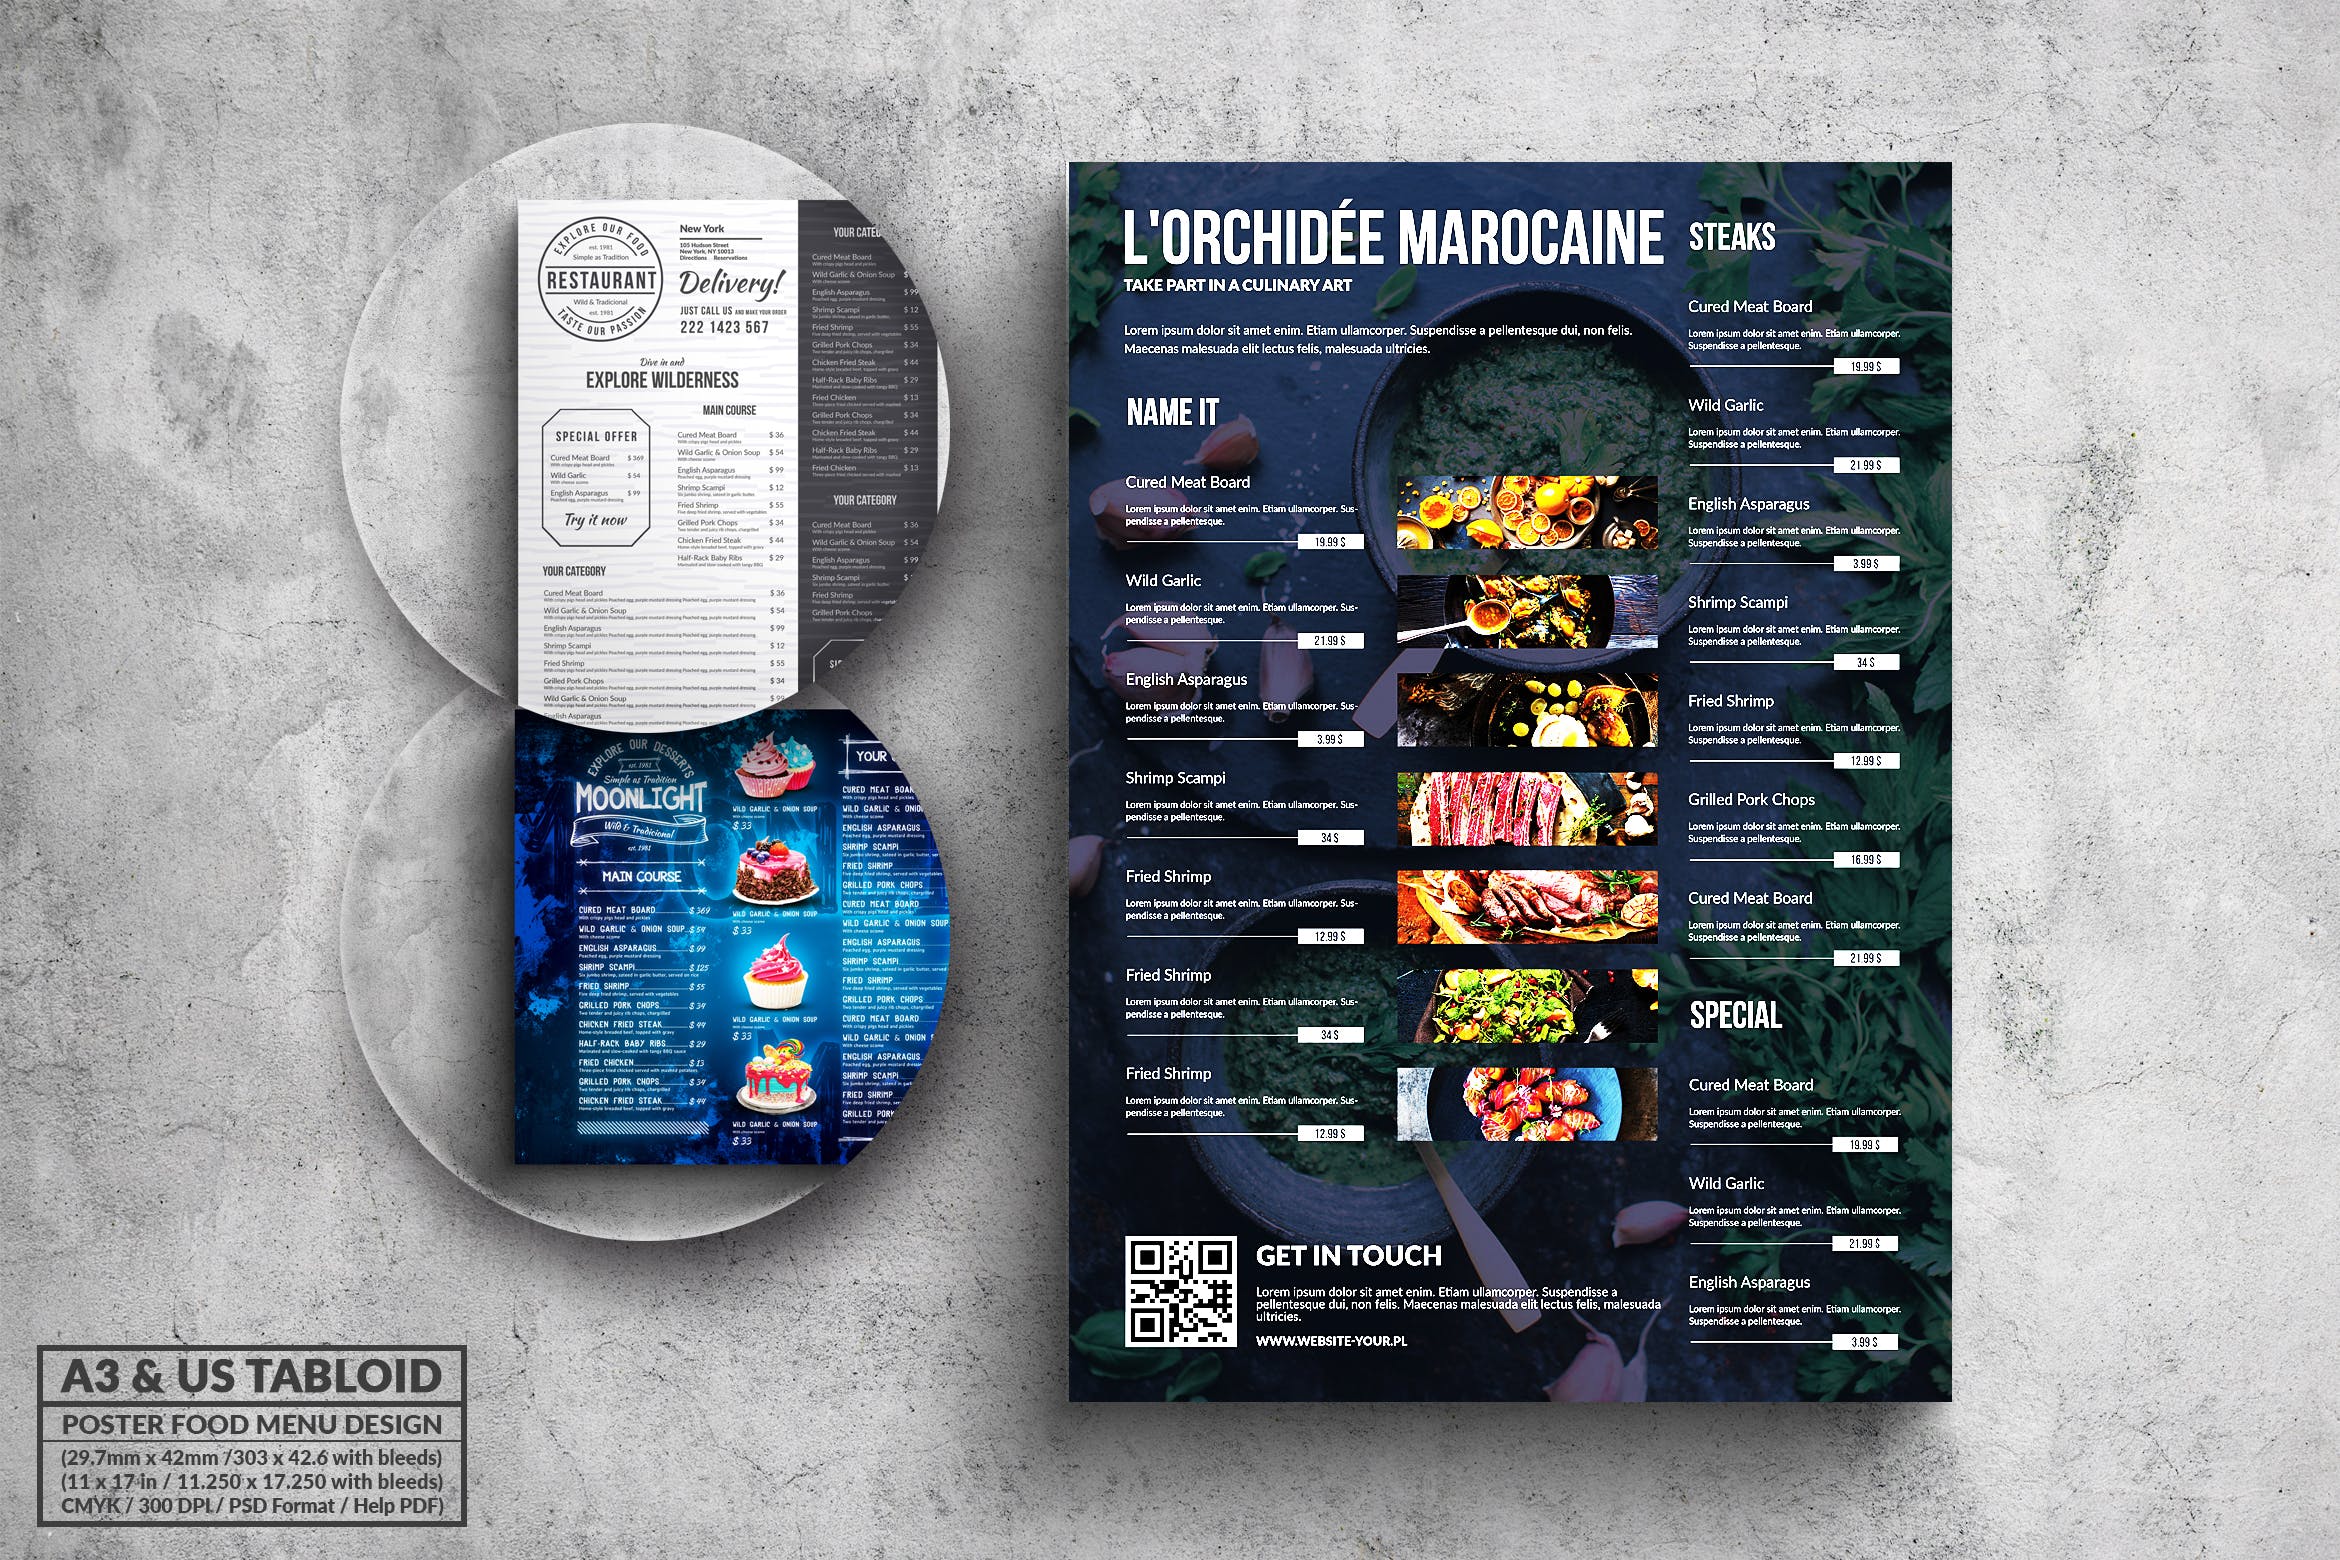 多合一餐馆餐厅菜单海报PSD素材素材中国精选模板v1 Poster Food Menu A3 & US Tabloid Bundle插图